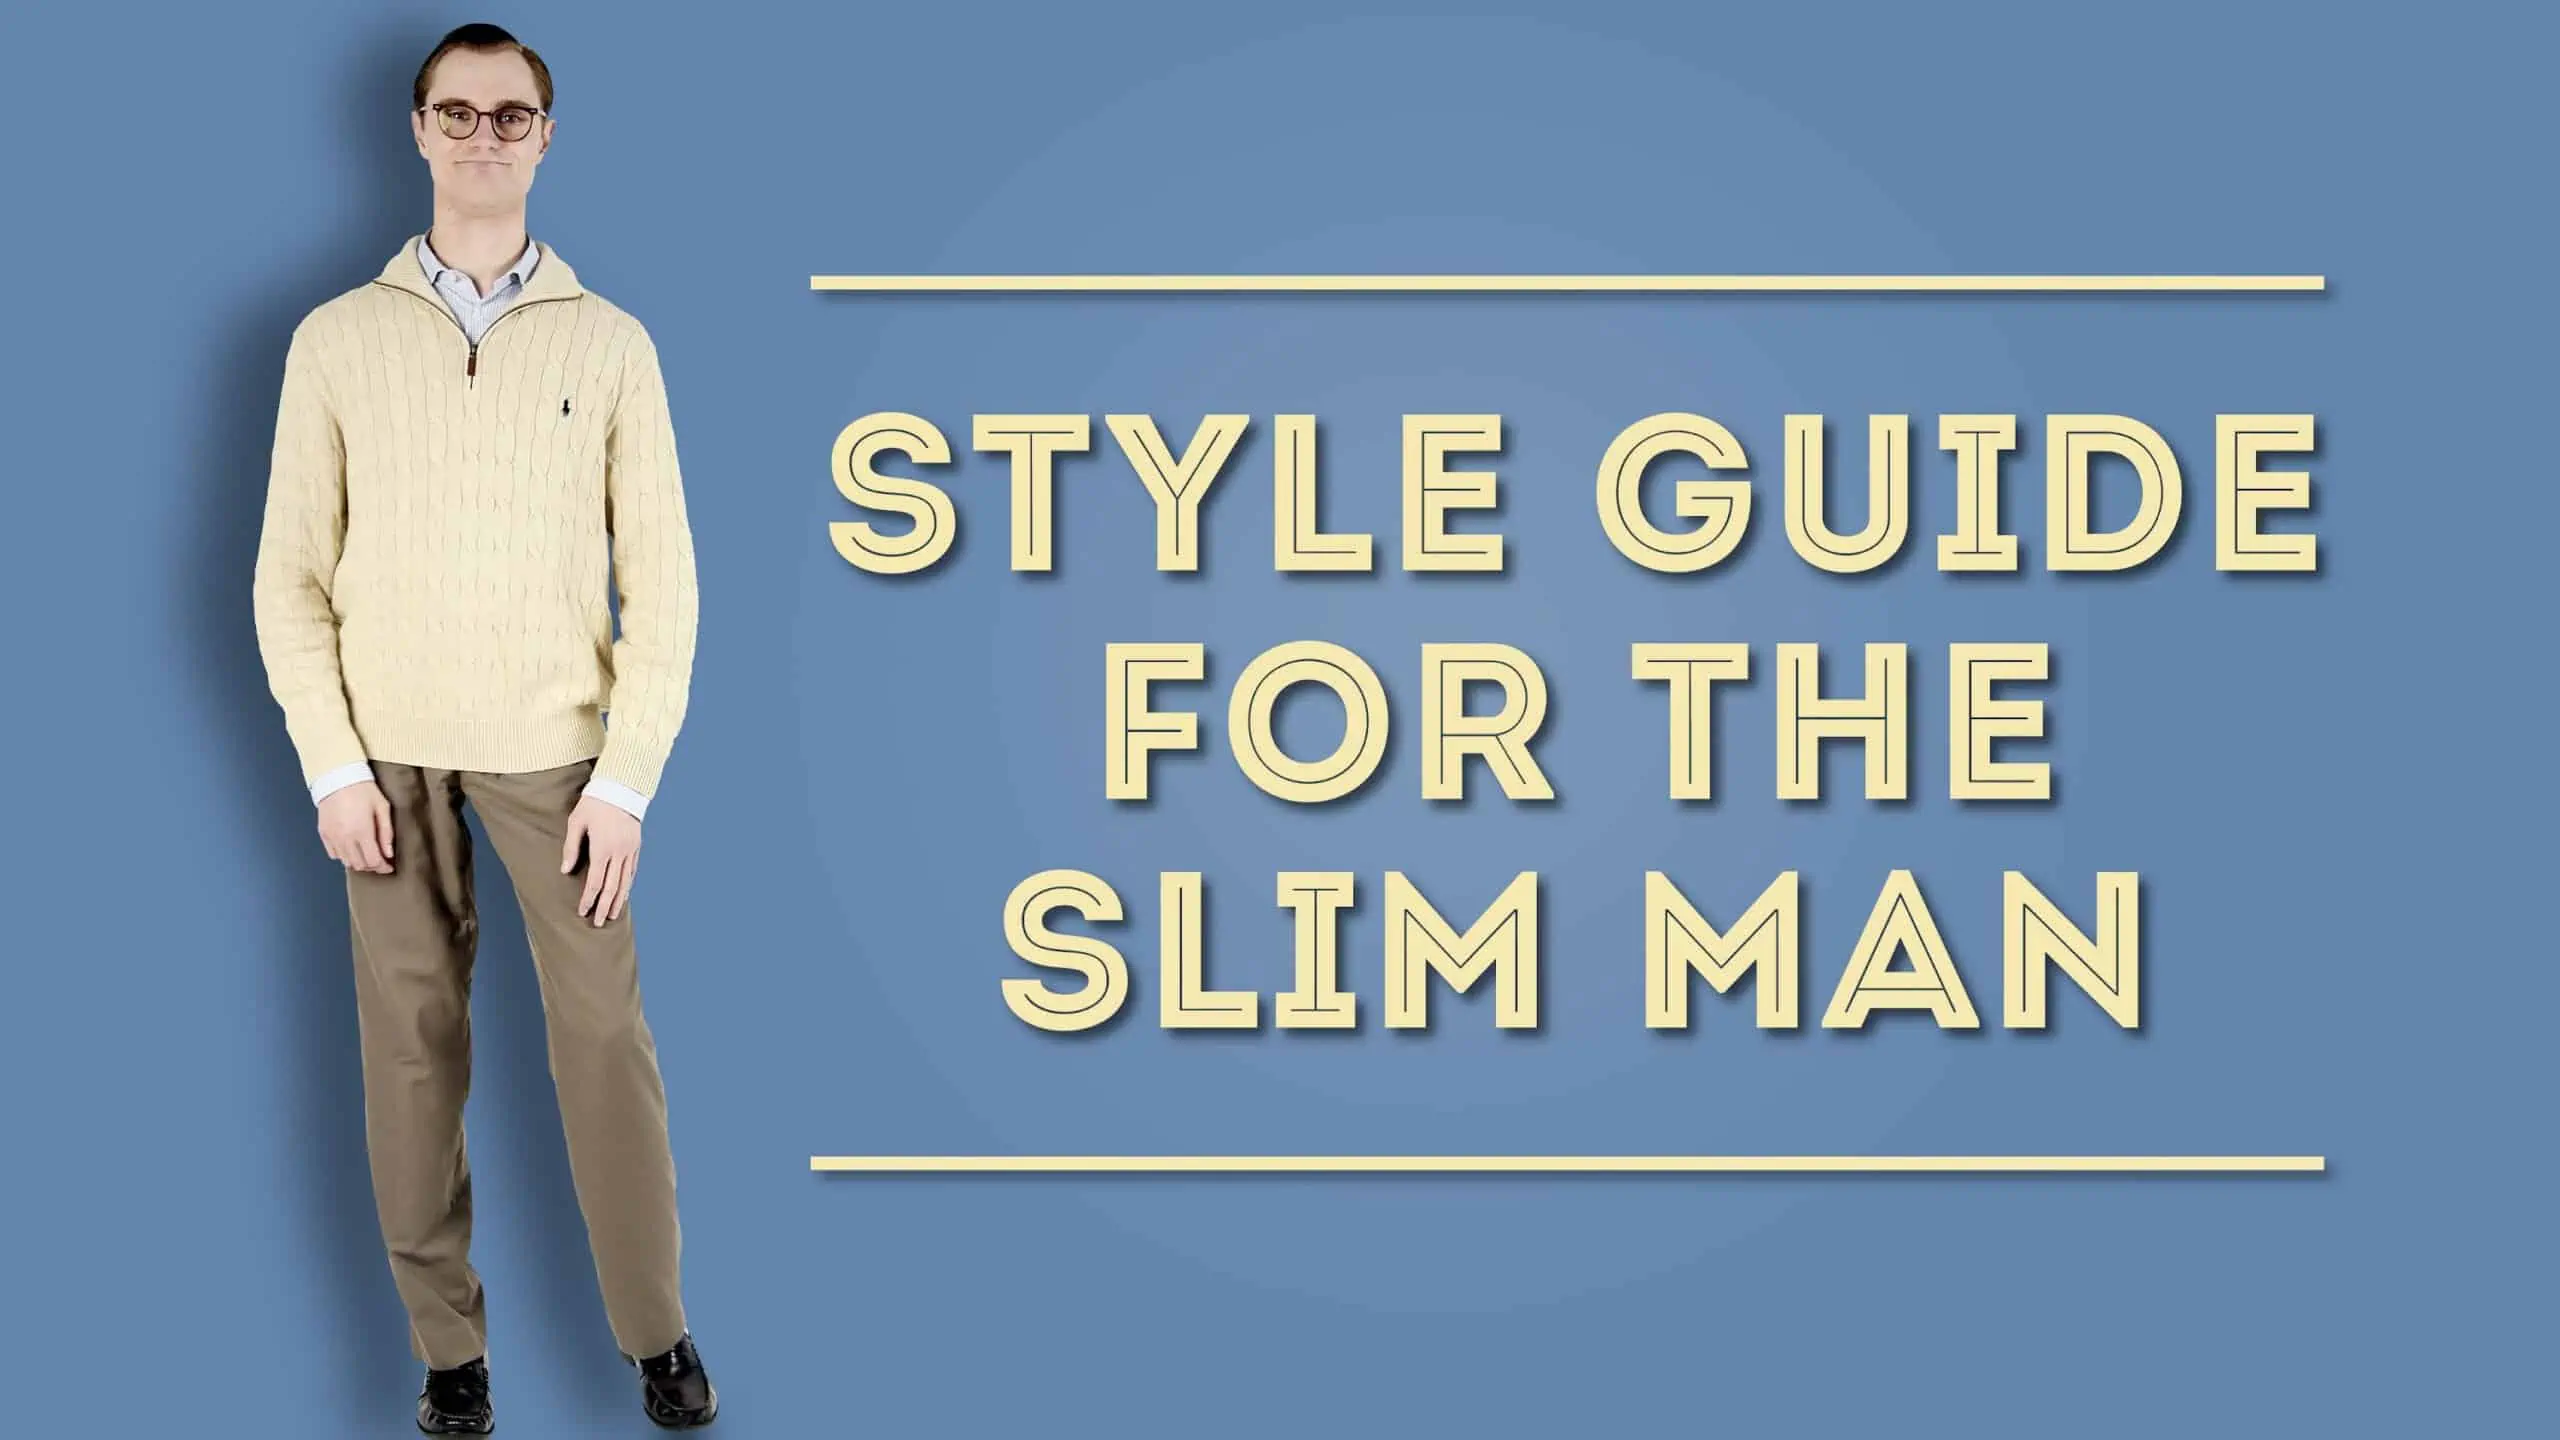 Men's Body Shape Guide (Fat, Skinny, Muscular) - Dress Your Body Type